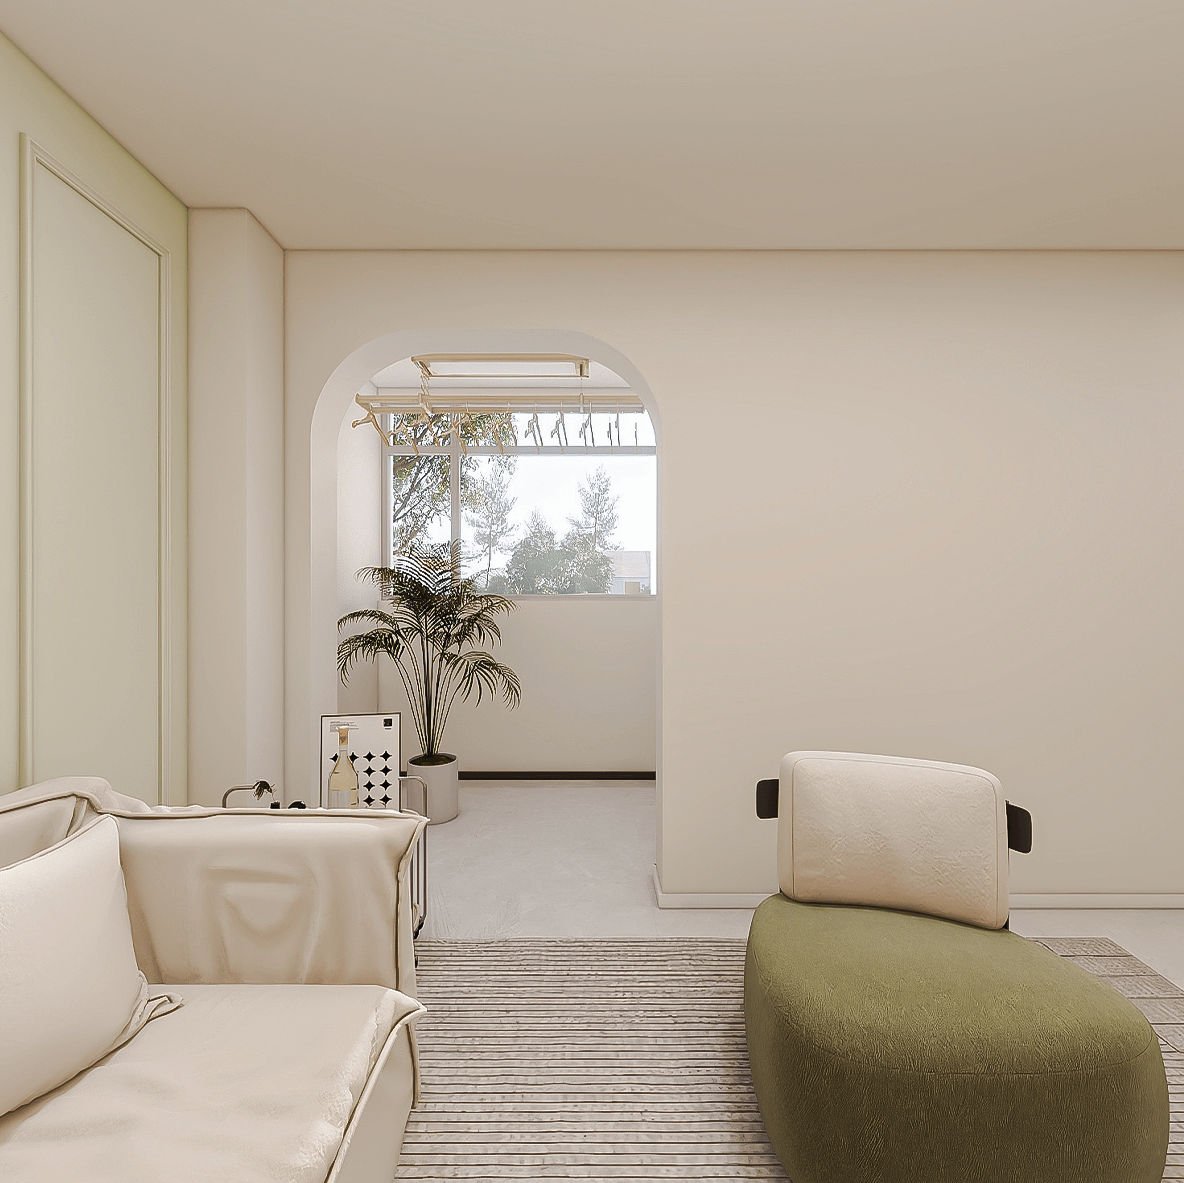 客厅连接阳台的门做了拱门，但是足够宽，方便来回穿梭。客厅沙发为米白落地款，外加绿色休闲沙发，会让客厅整体更简洁，但不单调，甚至绿色的加入会更有朝气。